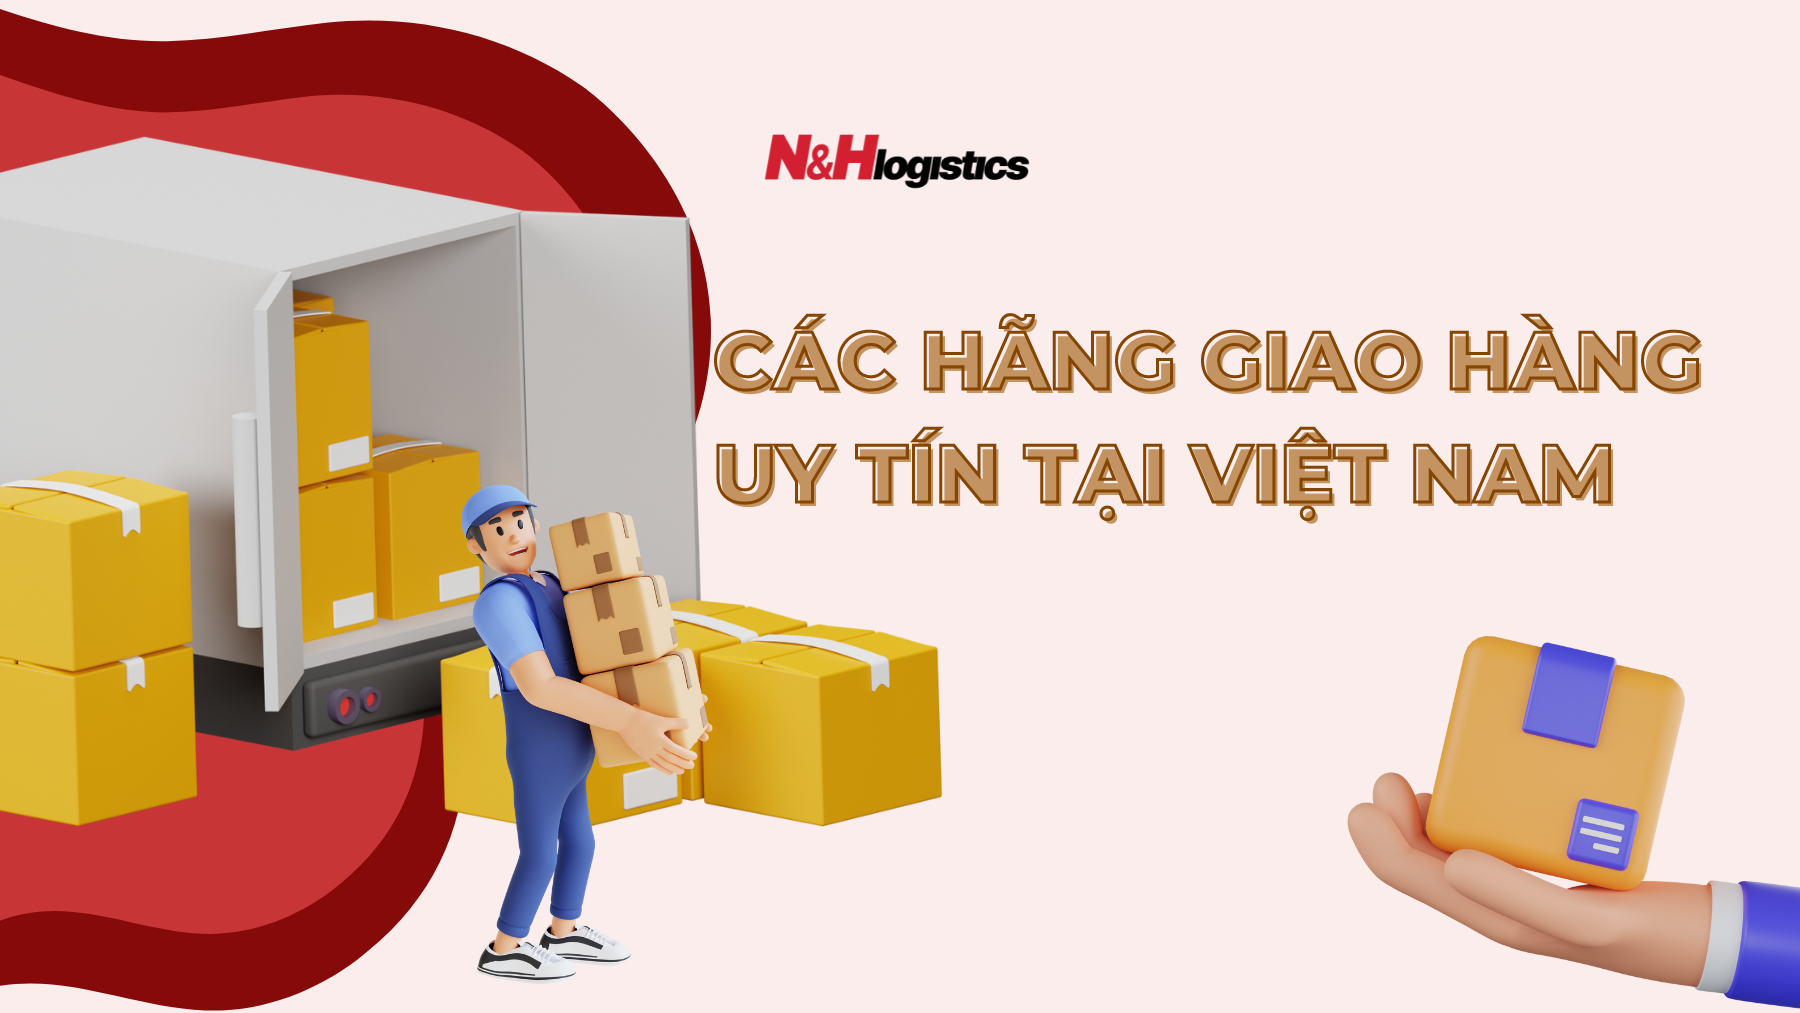 Các hãng giao hàng uy tín tại Việt Nam